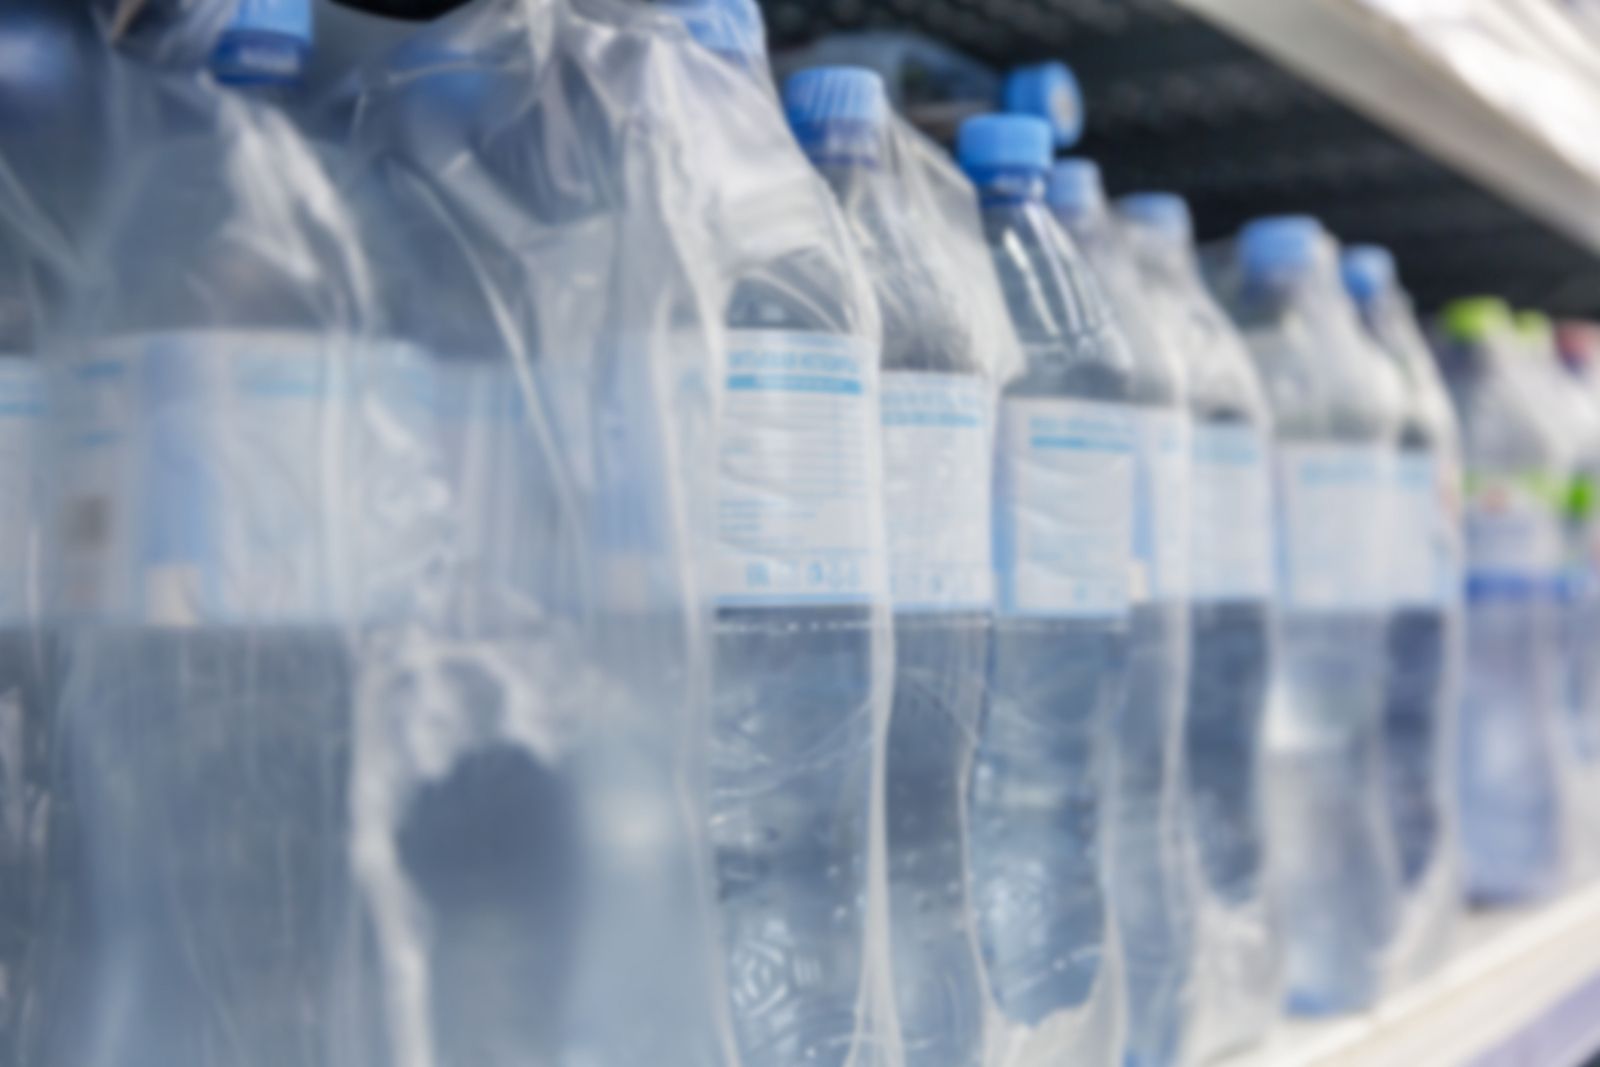 Beber agua embotellada se complica: su precio se dispara en plena sequía